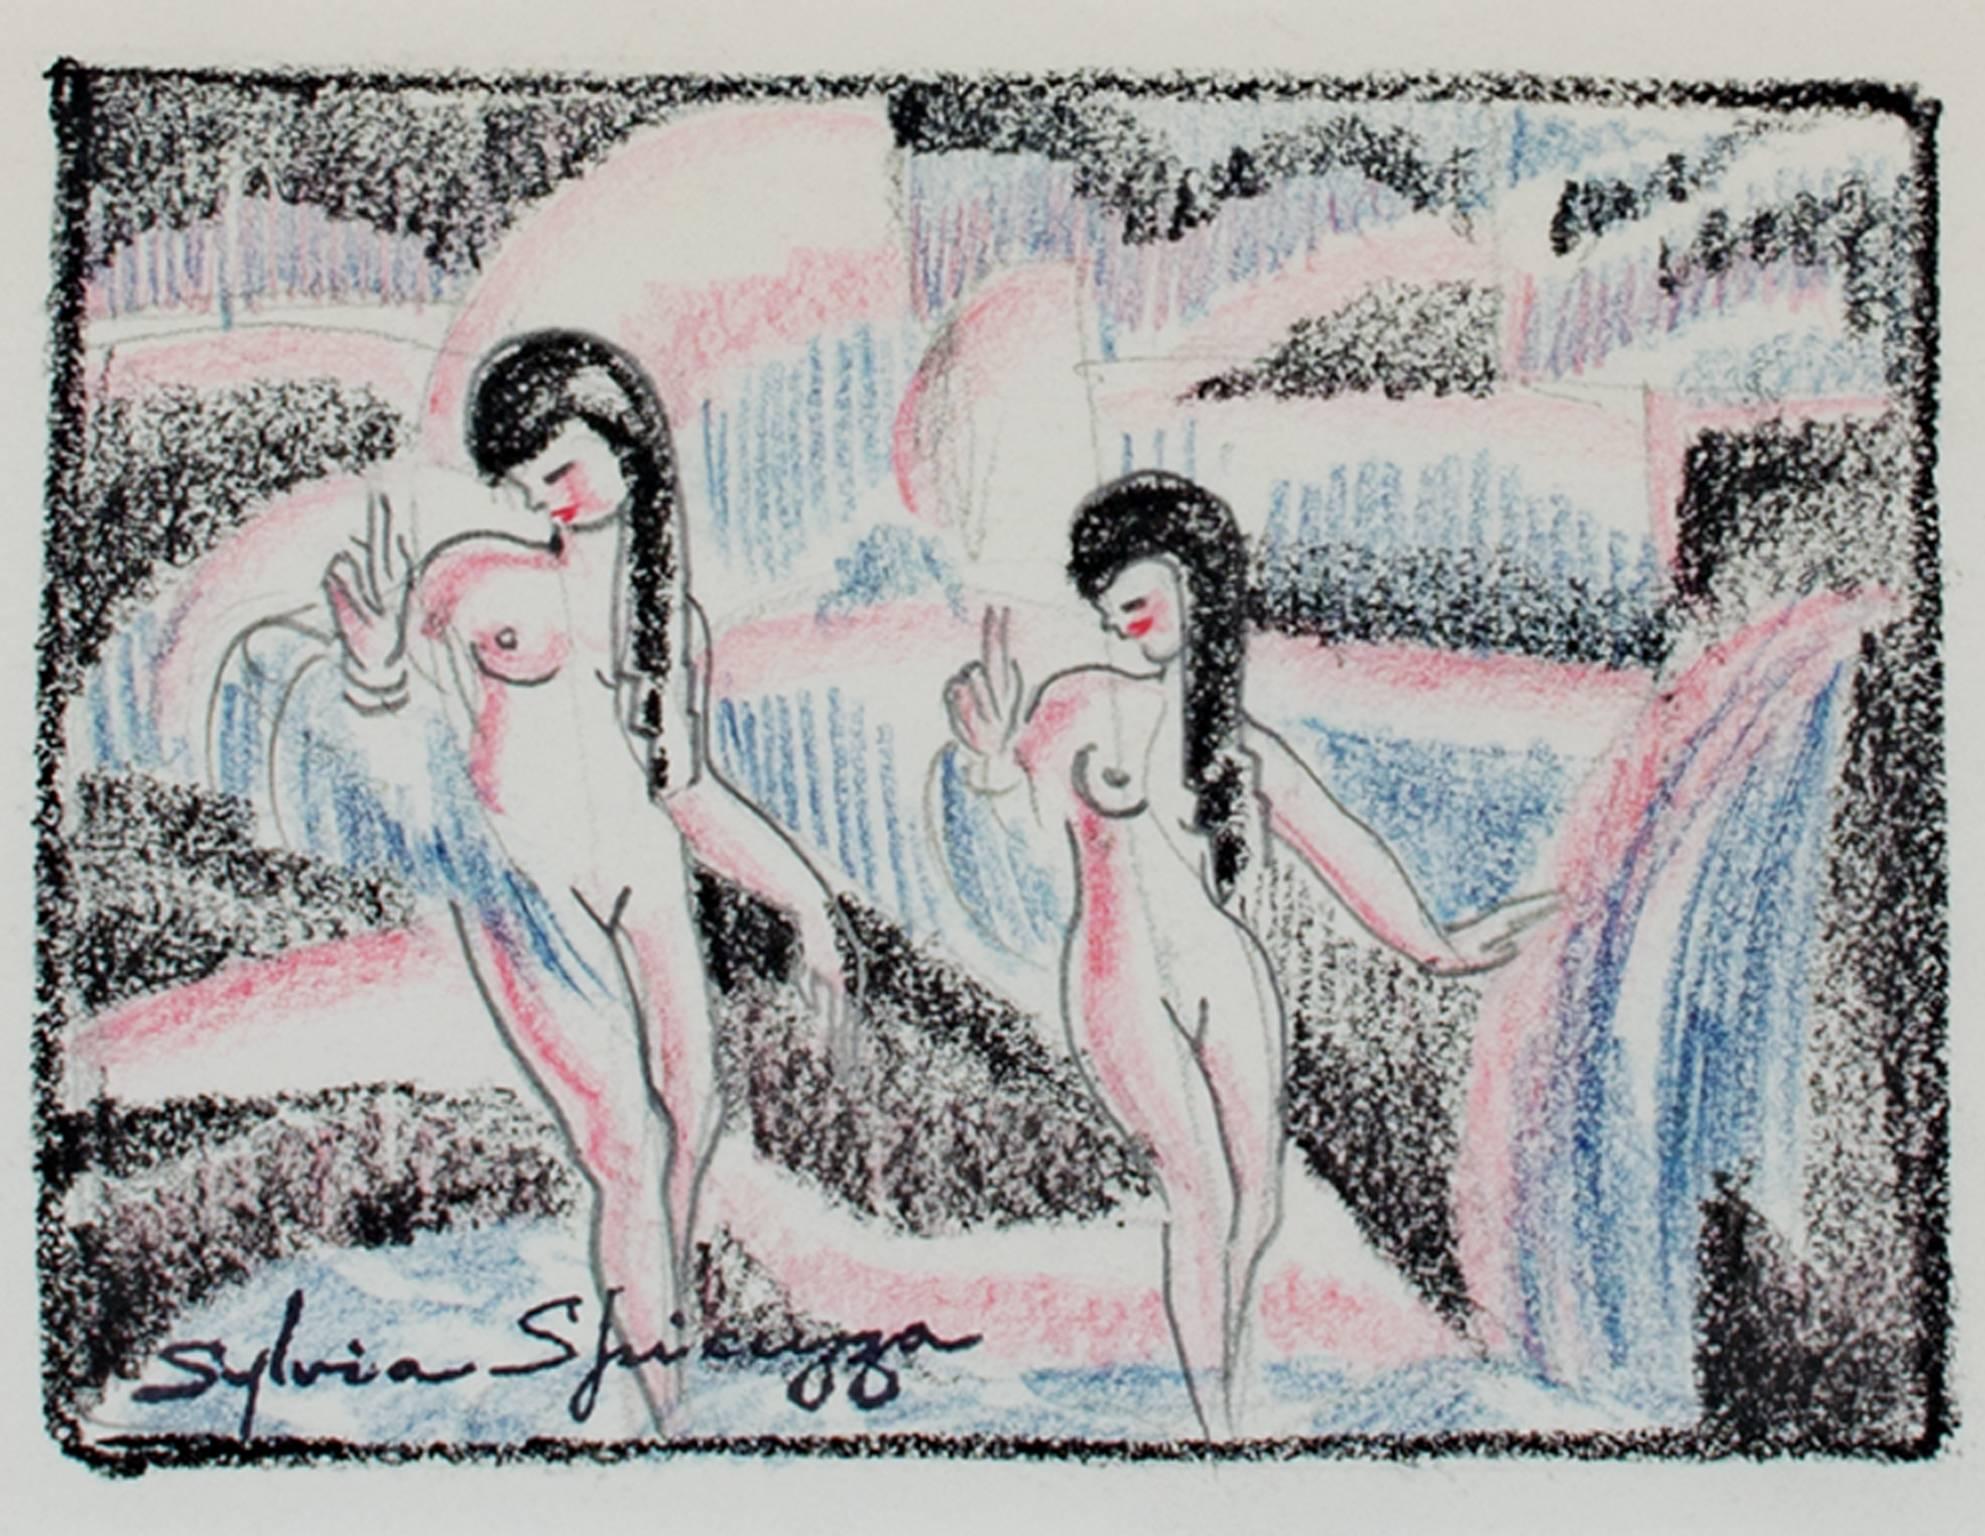 "Two Art Deco Nude Dancers #763" ist eine Originalzeichnung von Sylvia Spicuzza in Graphit, Buntstift und Farbstift. Die Künstlerin hat ihre Signatur unten links aufgestempelt. Dieses Werk zeigt zwei nackte Tänzerinnen in den Farben Rosa, Blau und